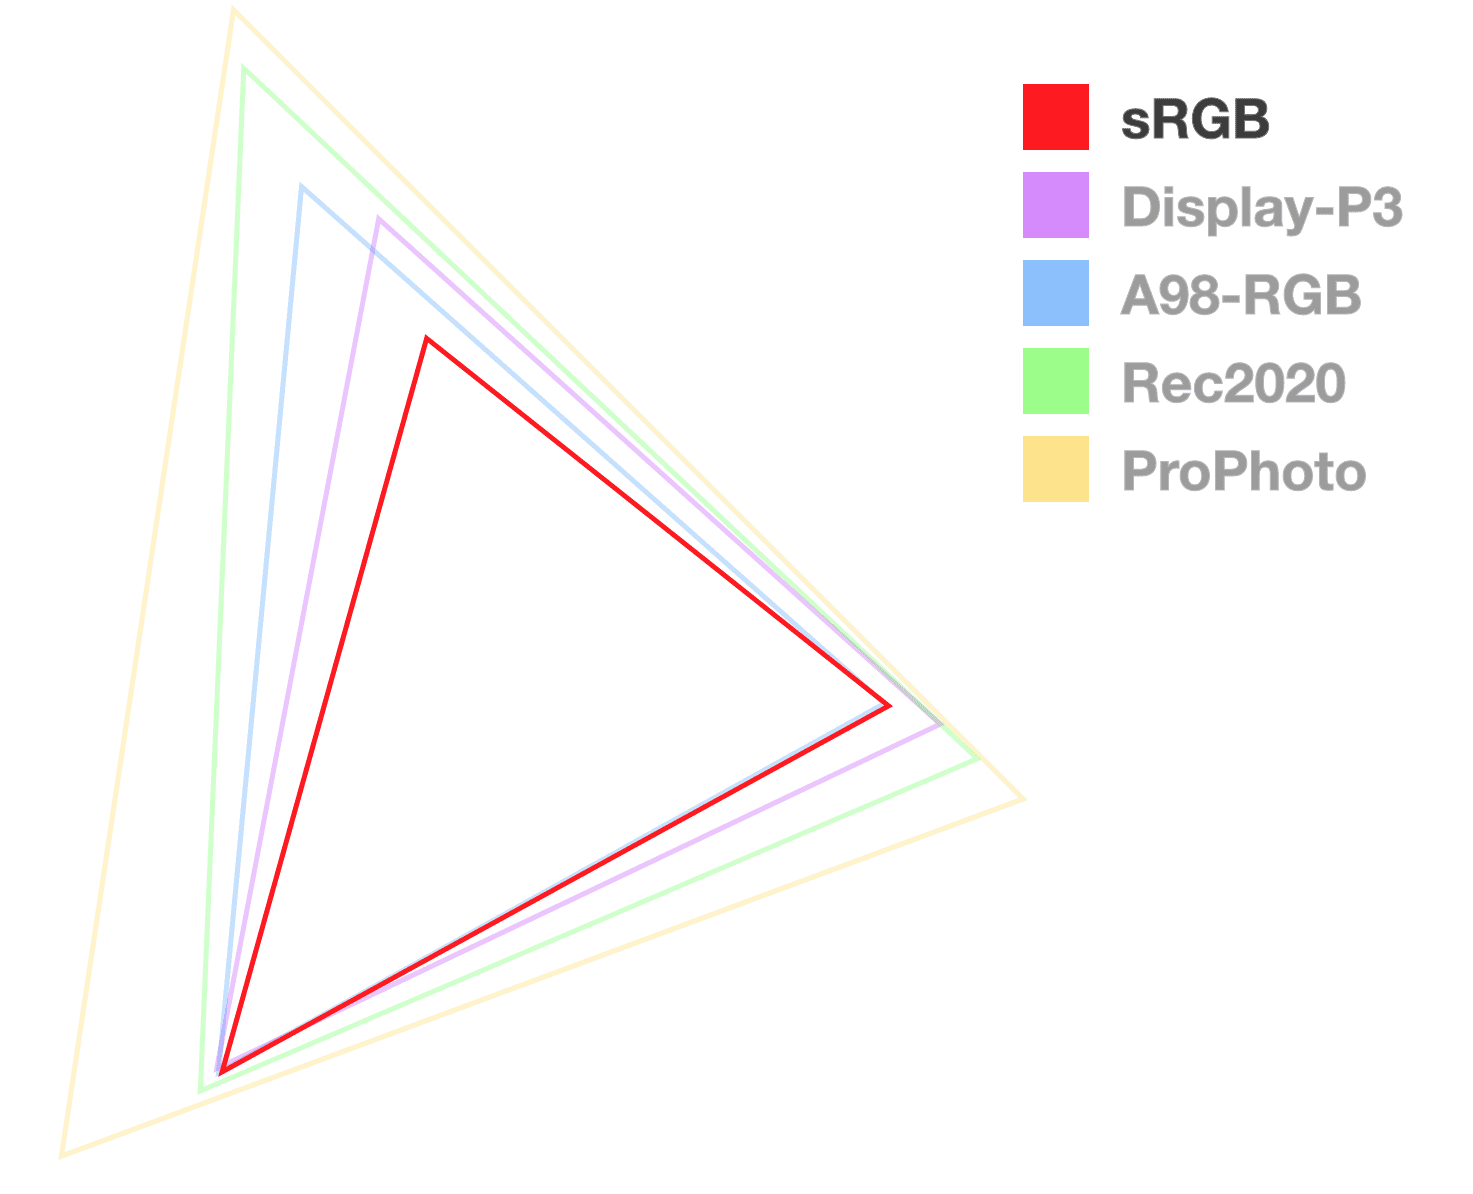 Tamamen opak olan tek renk sRGB üçgeni, aralığın boyutunu görselleştirmeye yardımcı olur.